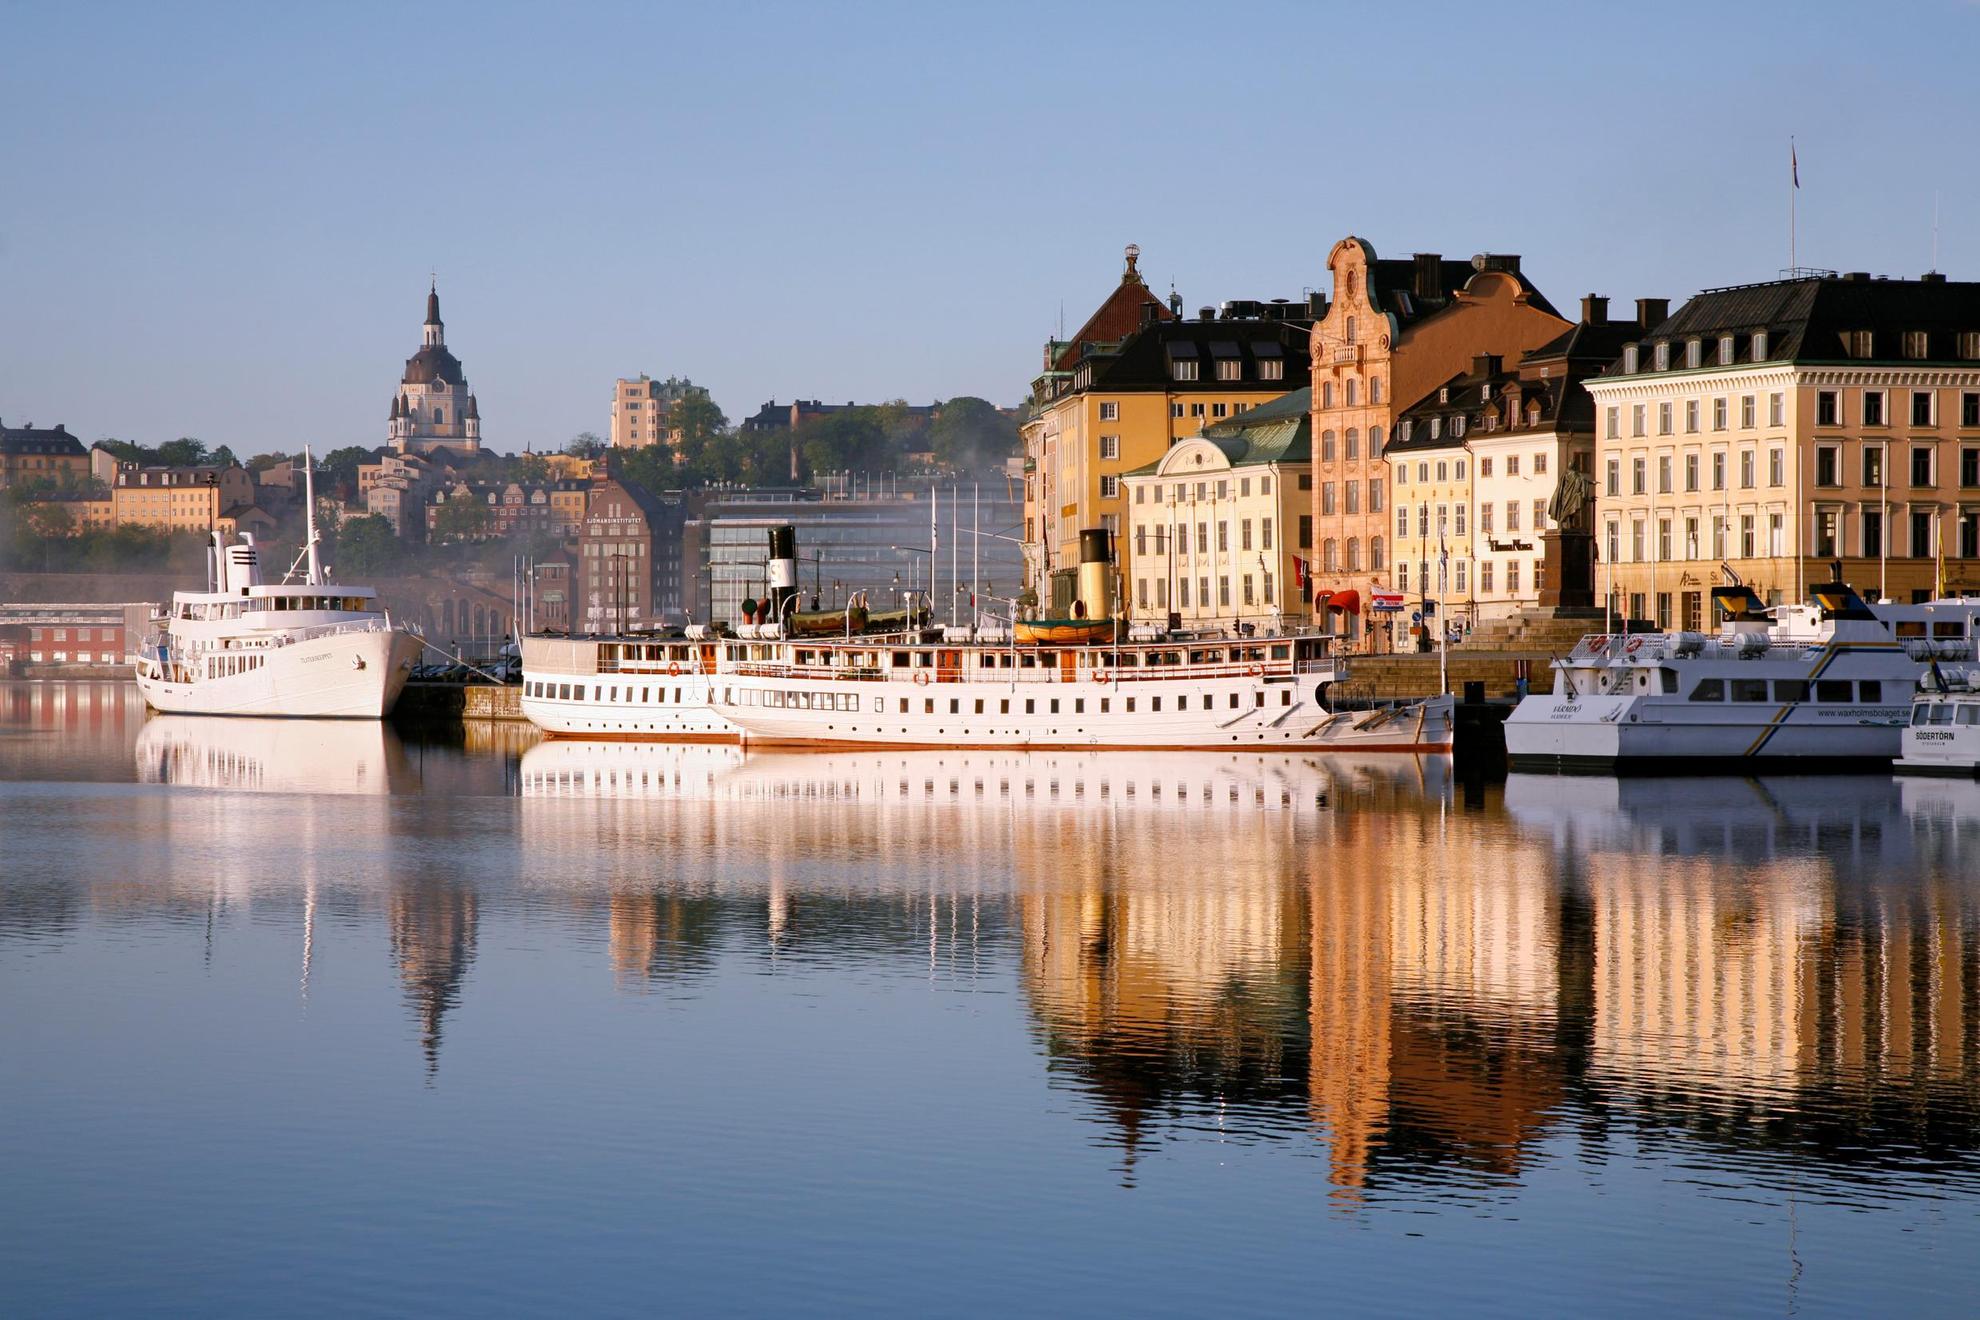 Der Hafen Skeppsbron in der Stockholmer Altstad. Zahlreiche Fähren legen am Hafen an. Die Altbauten der Stockholmer Innenstadt sind im Hintergrund.